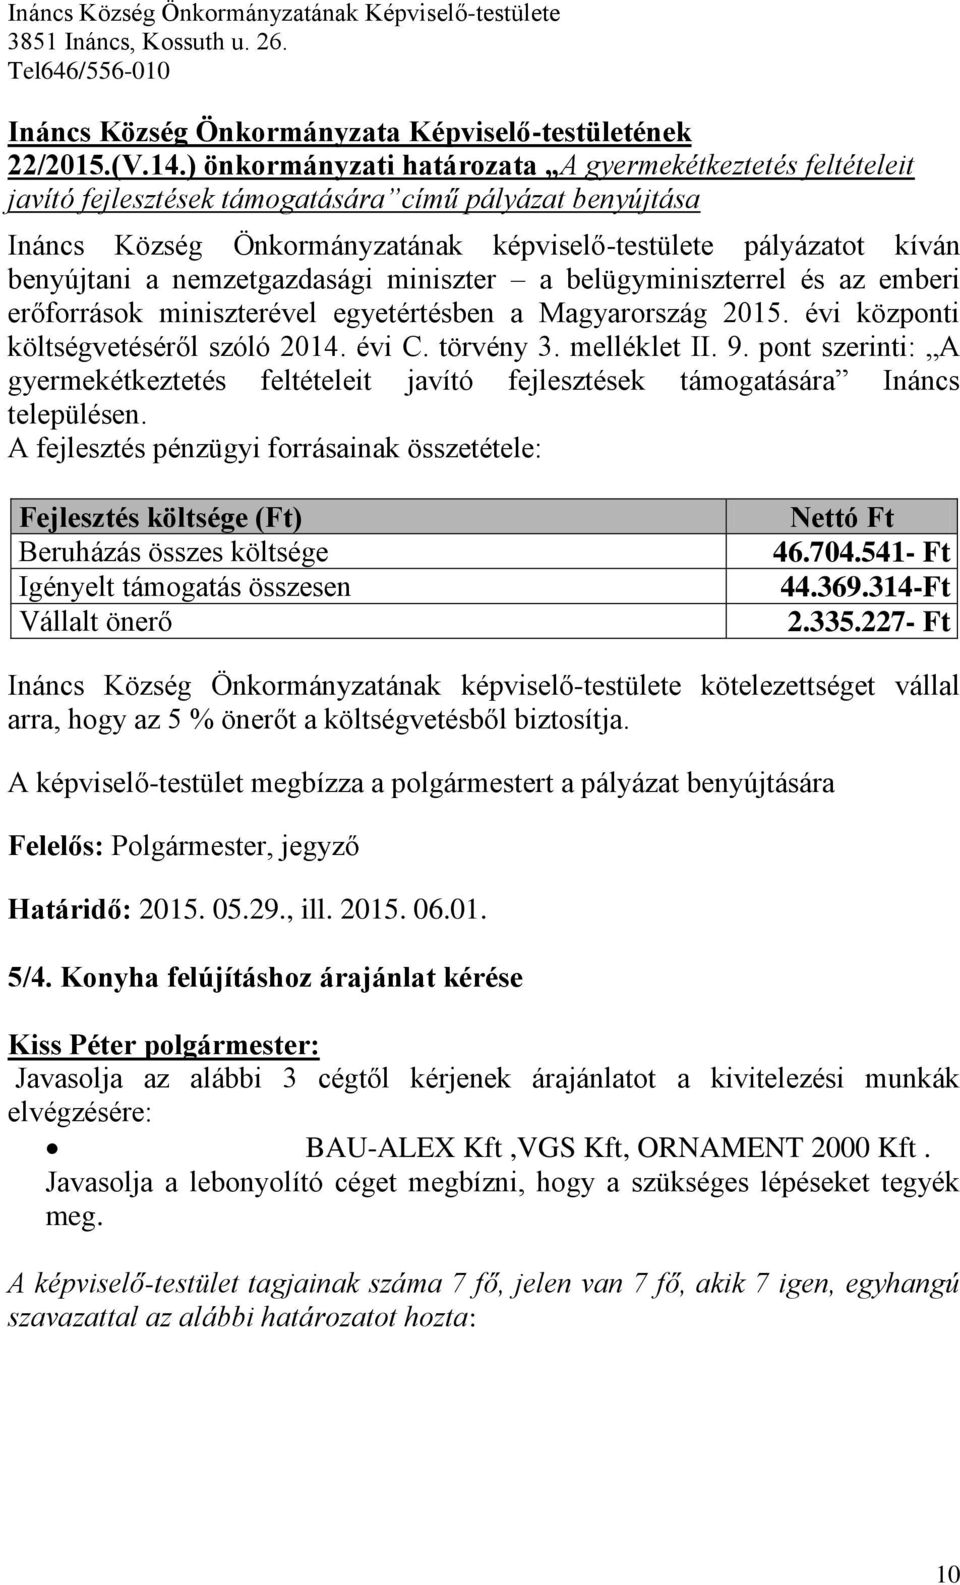 nemzetgazdasági miniszter a belügyminiszterrel és az emberi erőforrások miniszterével egyetértésben a Magyarország 2015. évi központi költségvetéséről szóló 2014. évi C. törvény 3. melléklet II. 9.